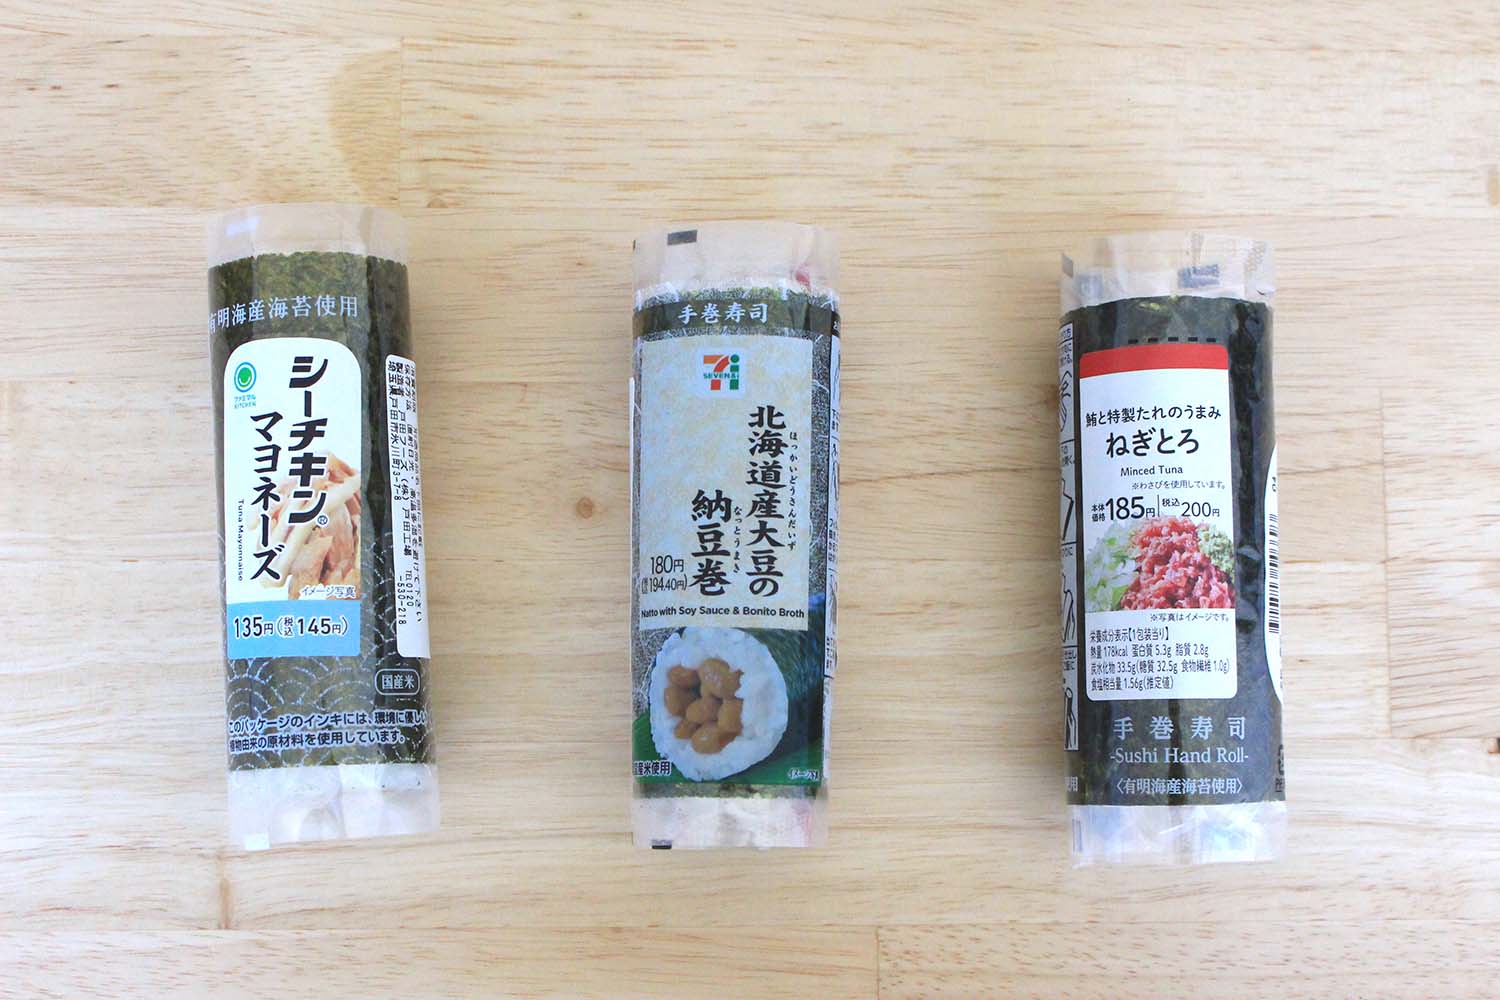 【日本超商美食推薦】超商海苔捲的美味吃法 | 優雅的開封方式與編輯部推薦商品介紹！